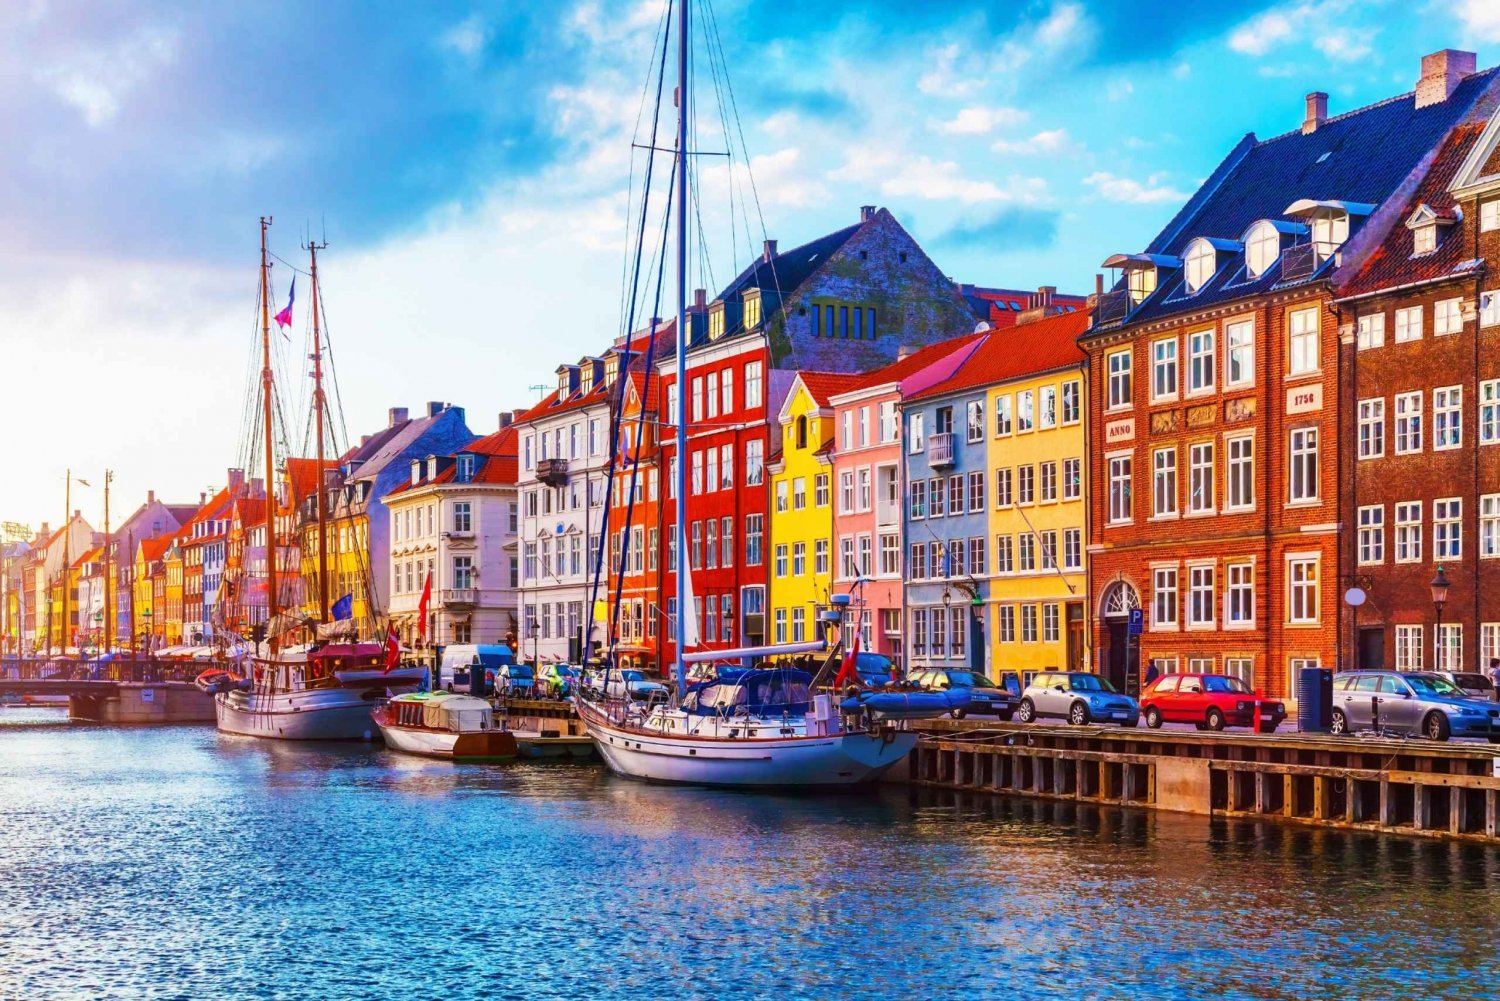 København: City Highlights Self-Guided Scavenger Hunt Tour